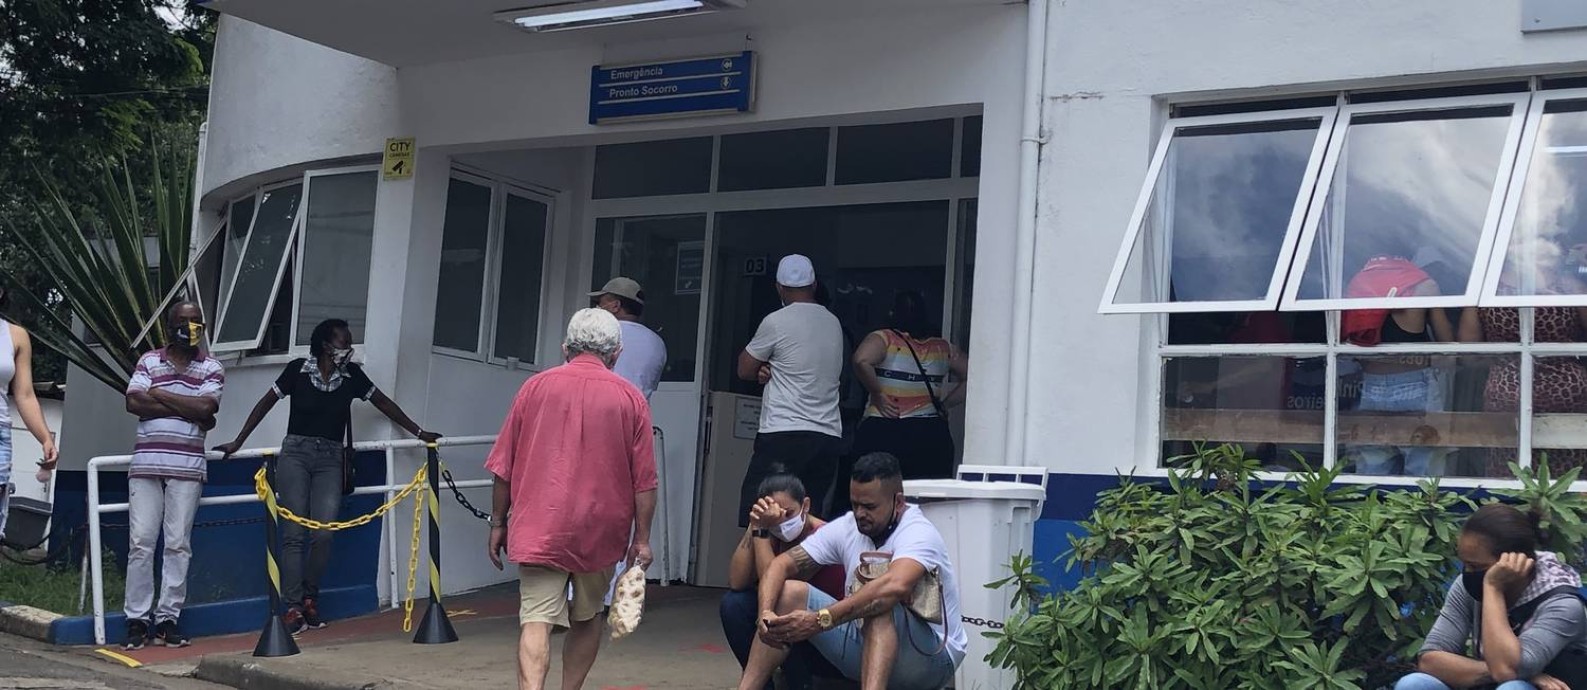 Pacientes aguardam atendimento em posto de saúde na zona oeste de São Paulo Foto: Constança Tatsch / Agência O Globo